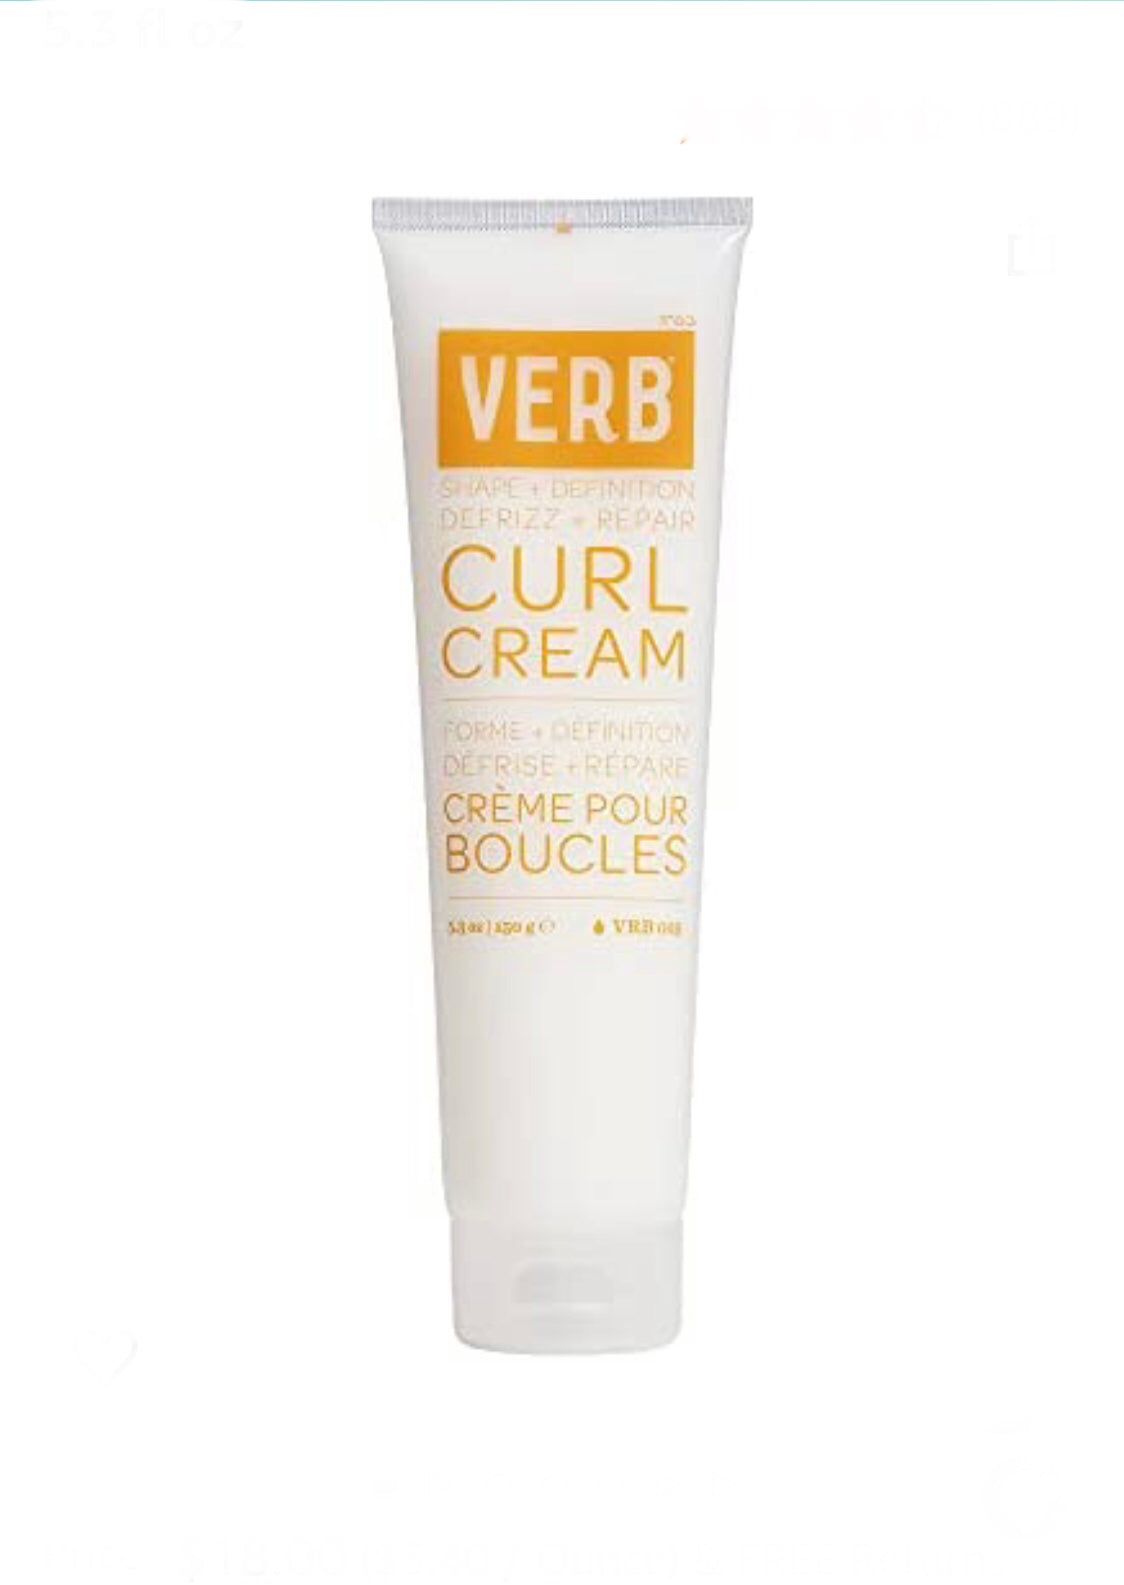 Verb - Curl cream 5.3 fl. oz./ 150 gr